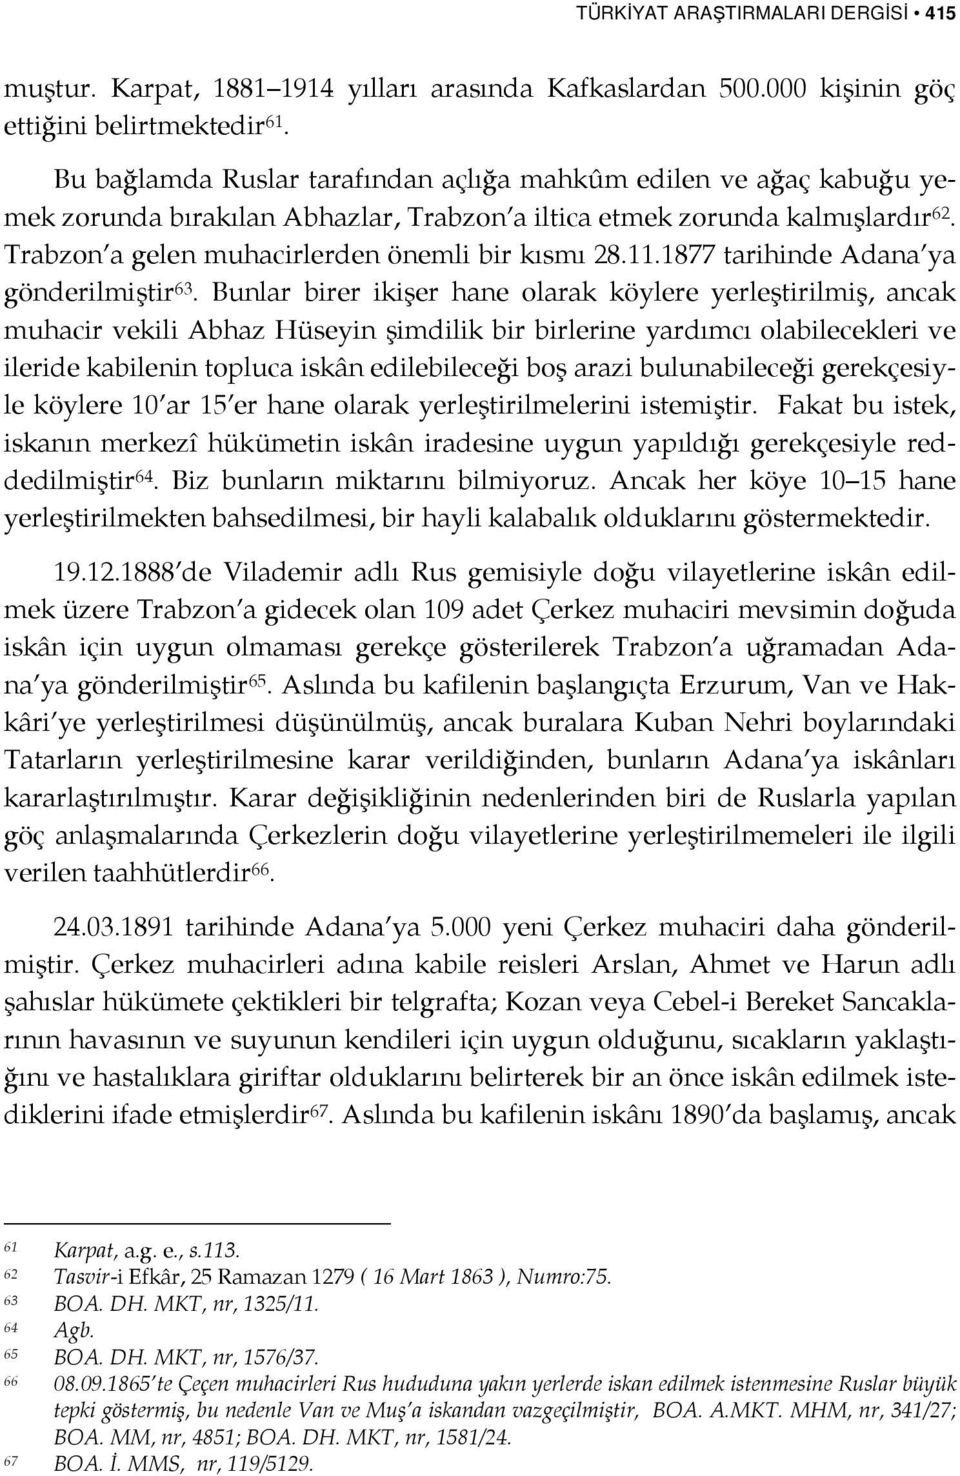 11.1877 tarihinde Adana ya gönderilmiştir 63.